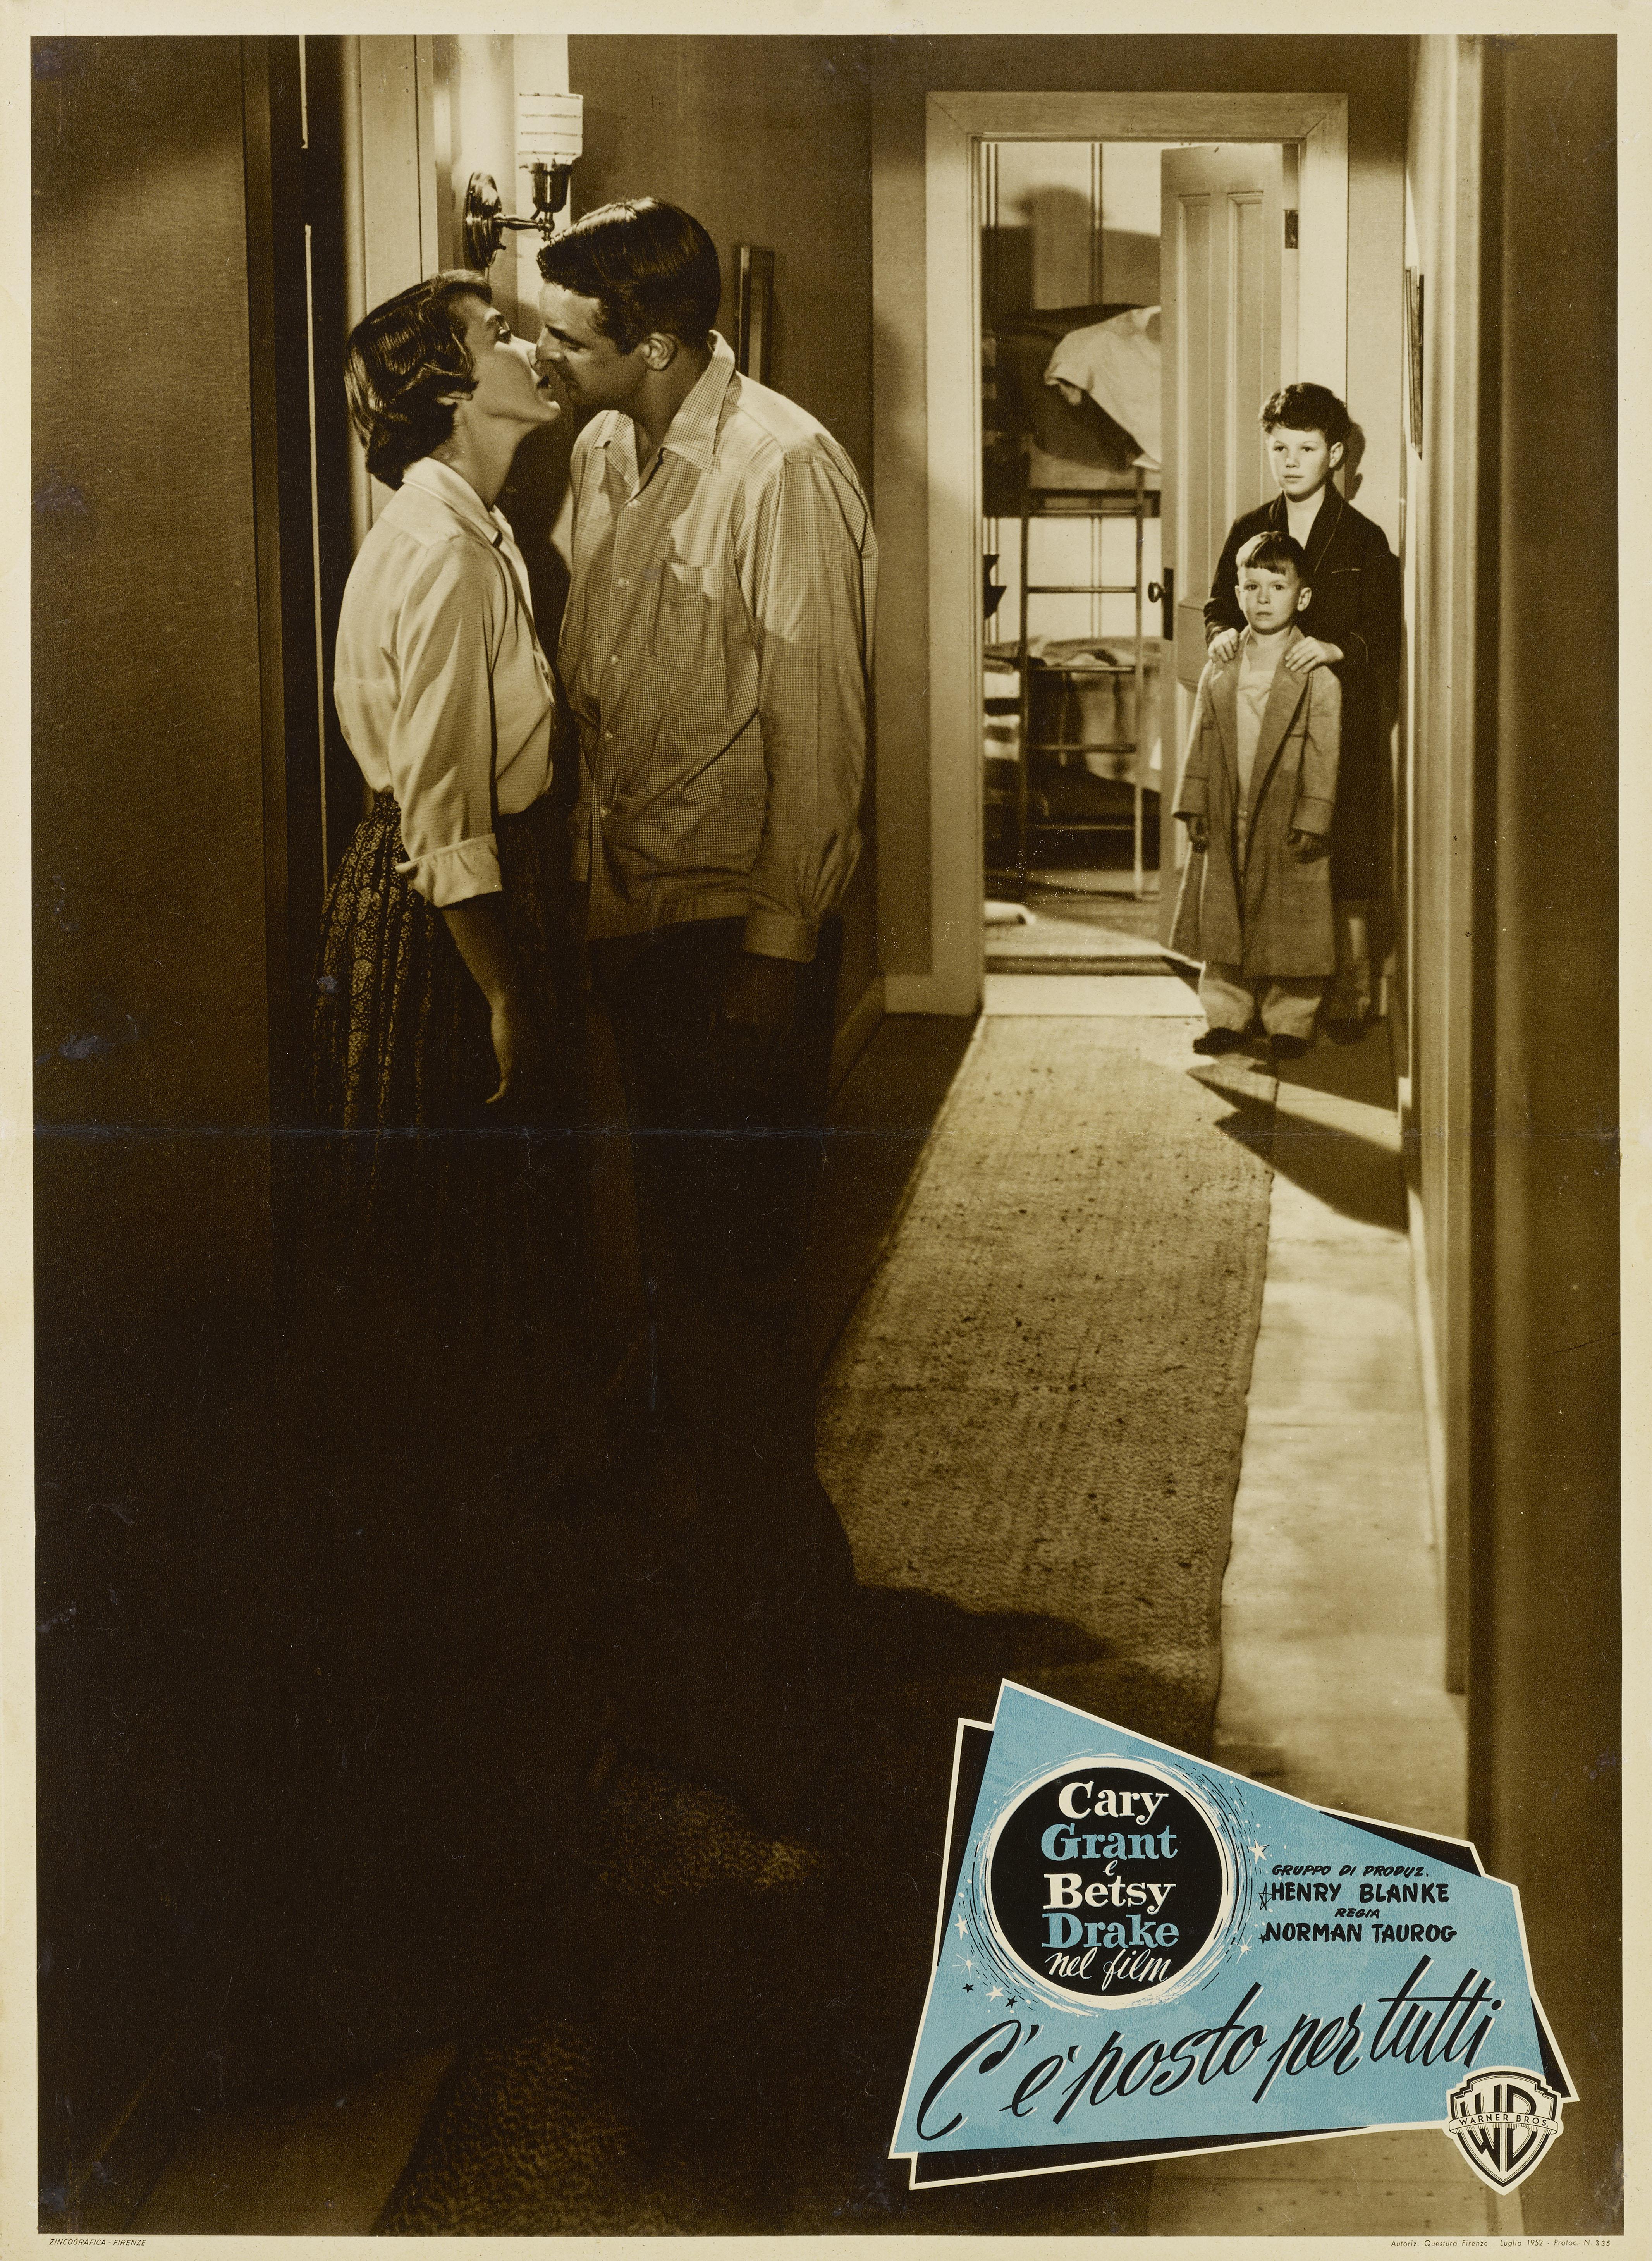 Originales italienisches Filmplakat für Room for One More, 1952.

Diese Komödie wurde von Norman Taurog inszeniert und mit Cary Grant und Betsy Drake in den Hauptrollen gedreht.
Das Plakat ist in ausgezeichnetem Zustand, mit nur einer kleinen